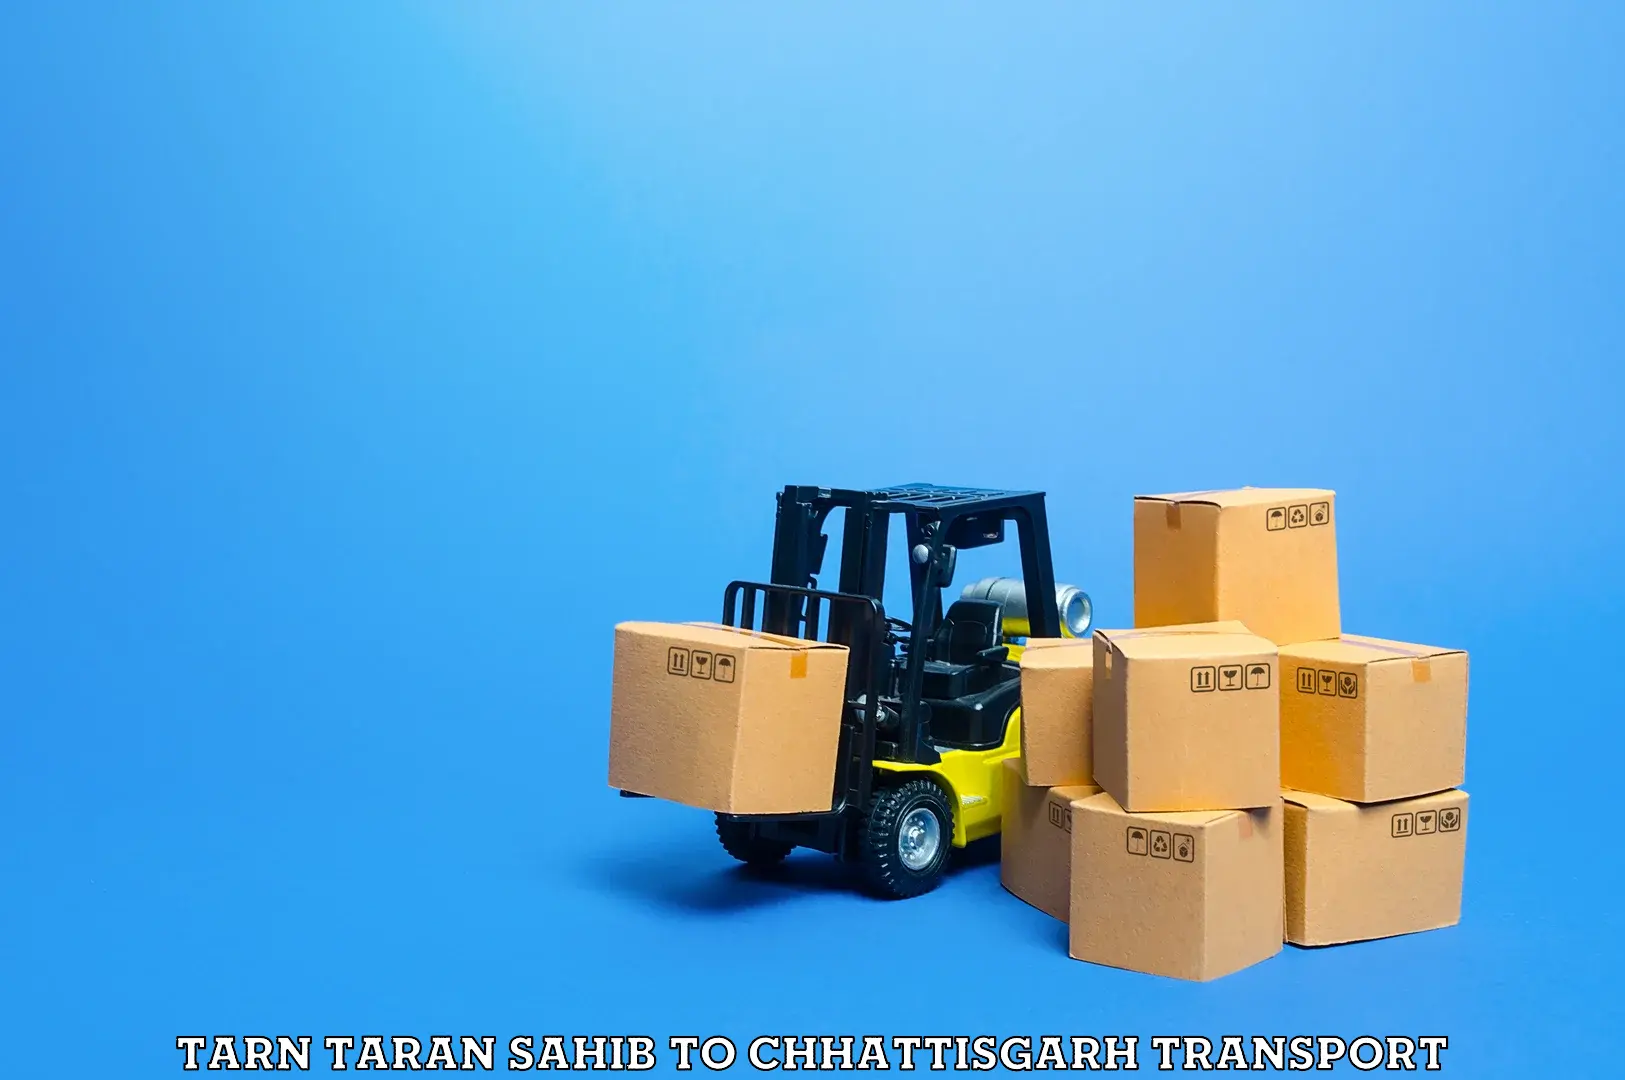 Daily parcel service transport Tarn Taran Sahib to Jagdalpur